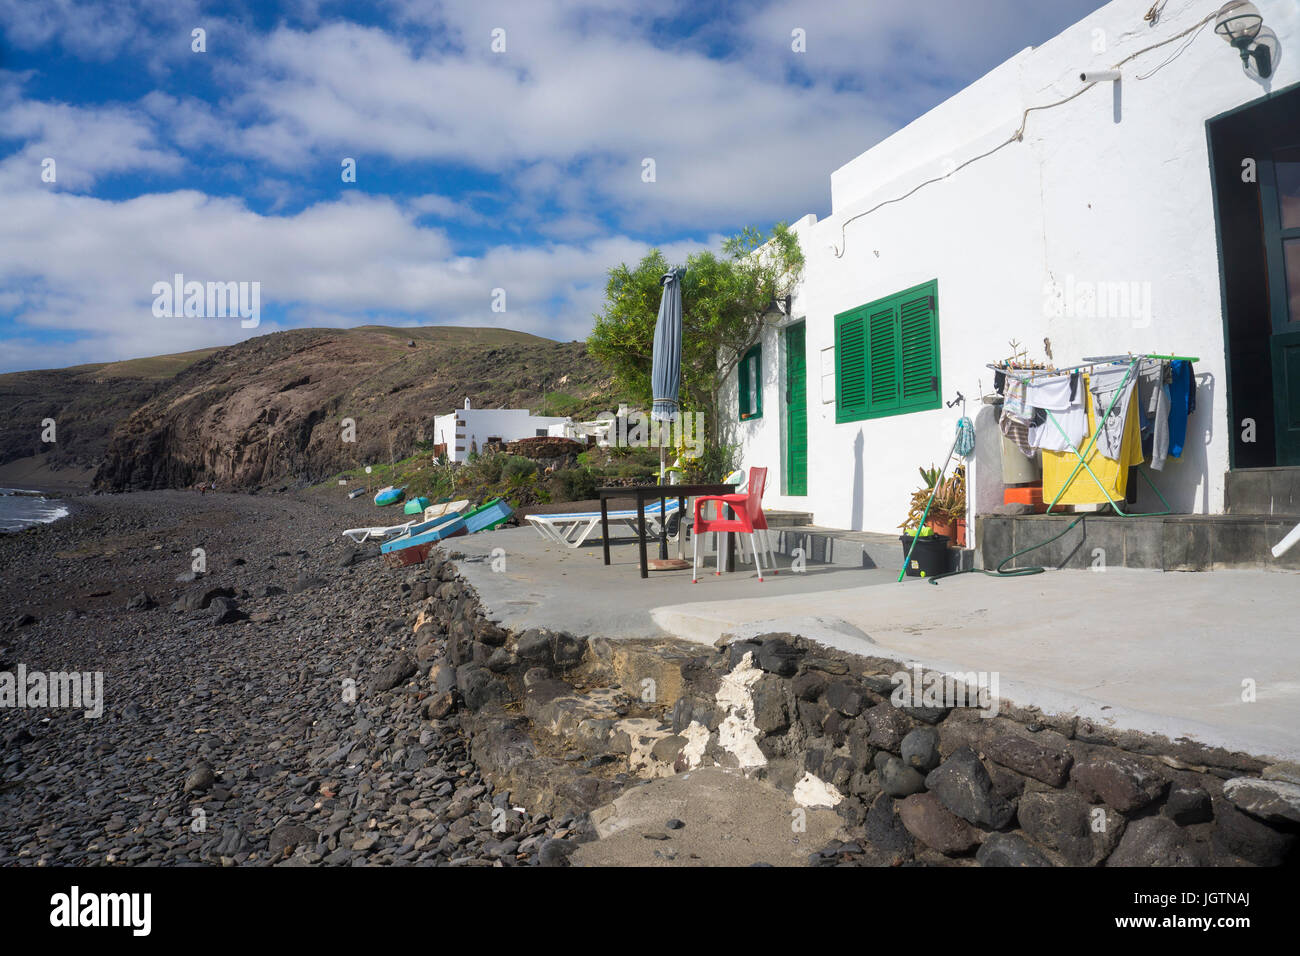 Kleines Fischerhaus mit heraus hängender Wäsche, Strand des Fischerdorfes Playa Quemada, Insel Lanzarote, Kanarische Inseln, Spanien, Europa Stockfoto